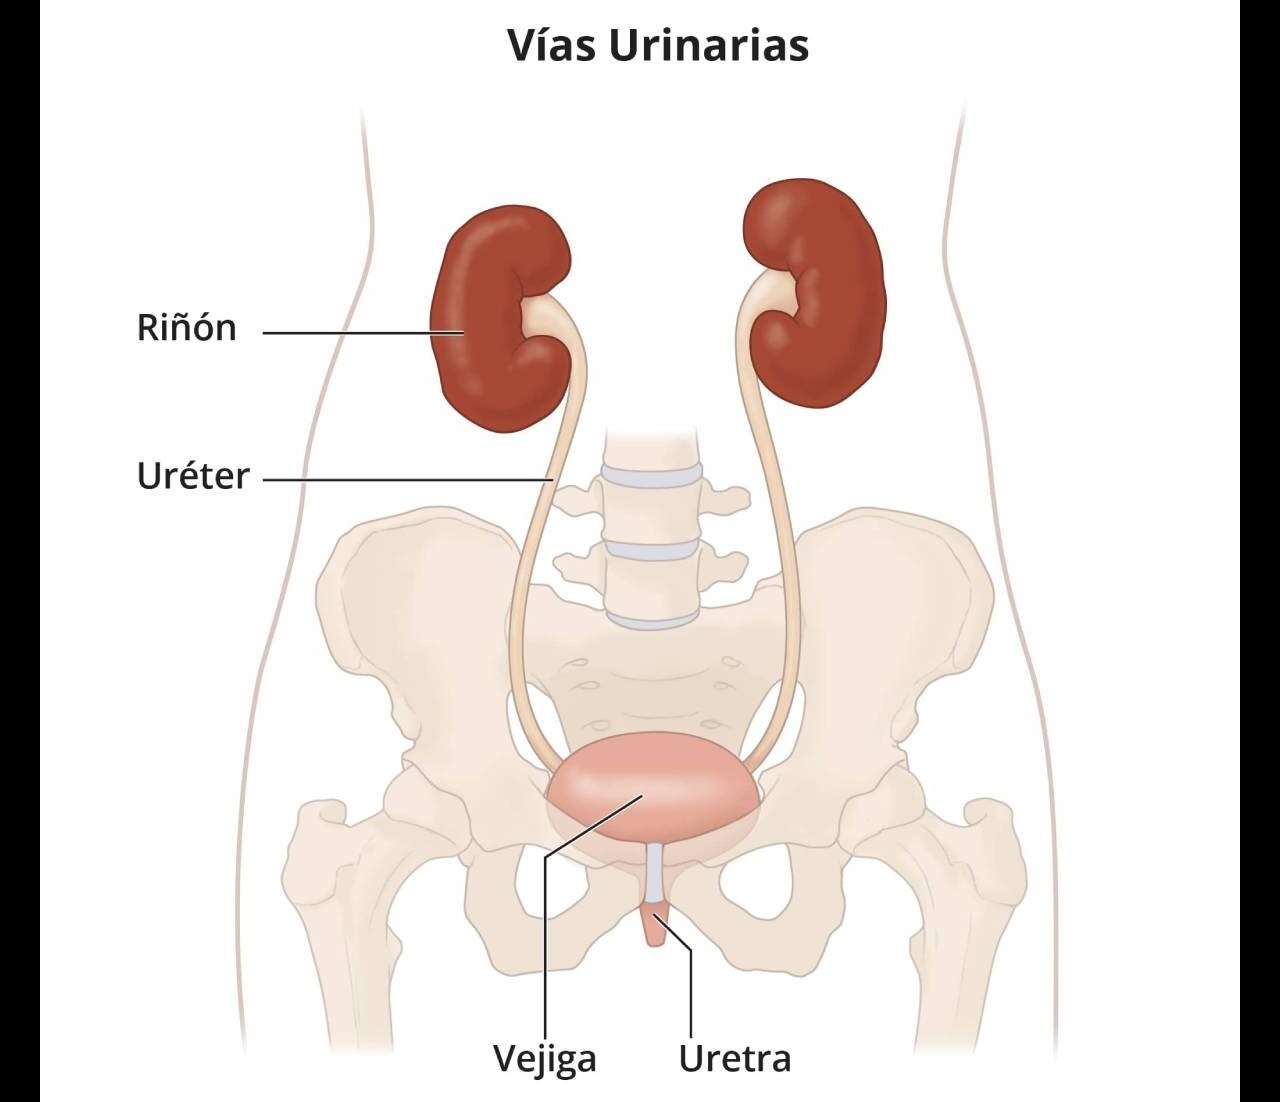 Las vías urinarias, que incluyen los riñones, los uréteres, la vejiga y la uretra.